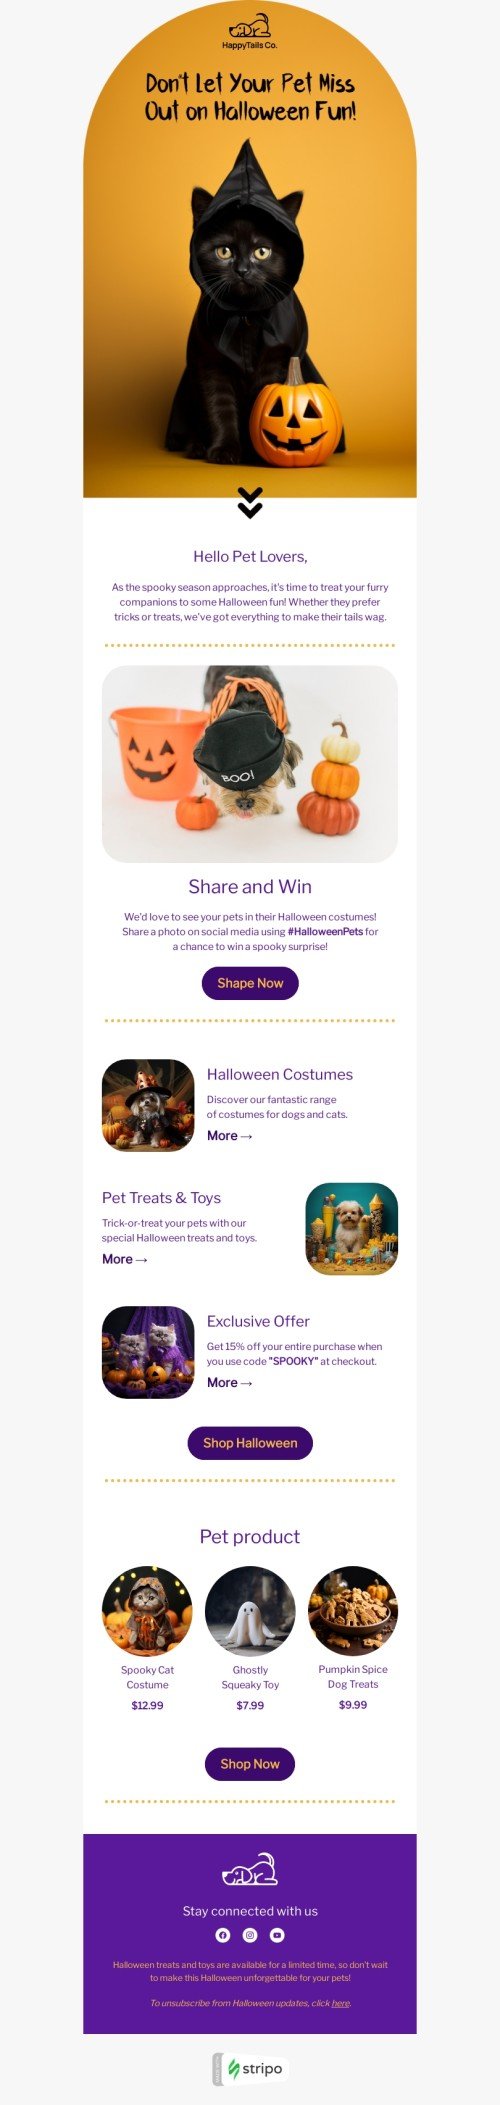 Plantilla de correo electrónico «Hola amantes de las mascotas» de Halloween para la industria de mascotas Vista de móvil